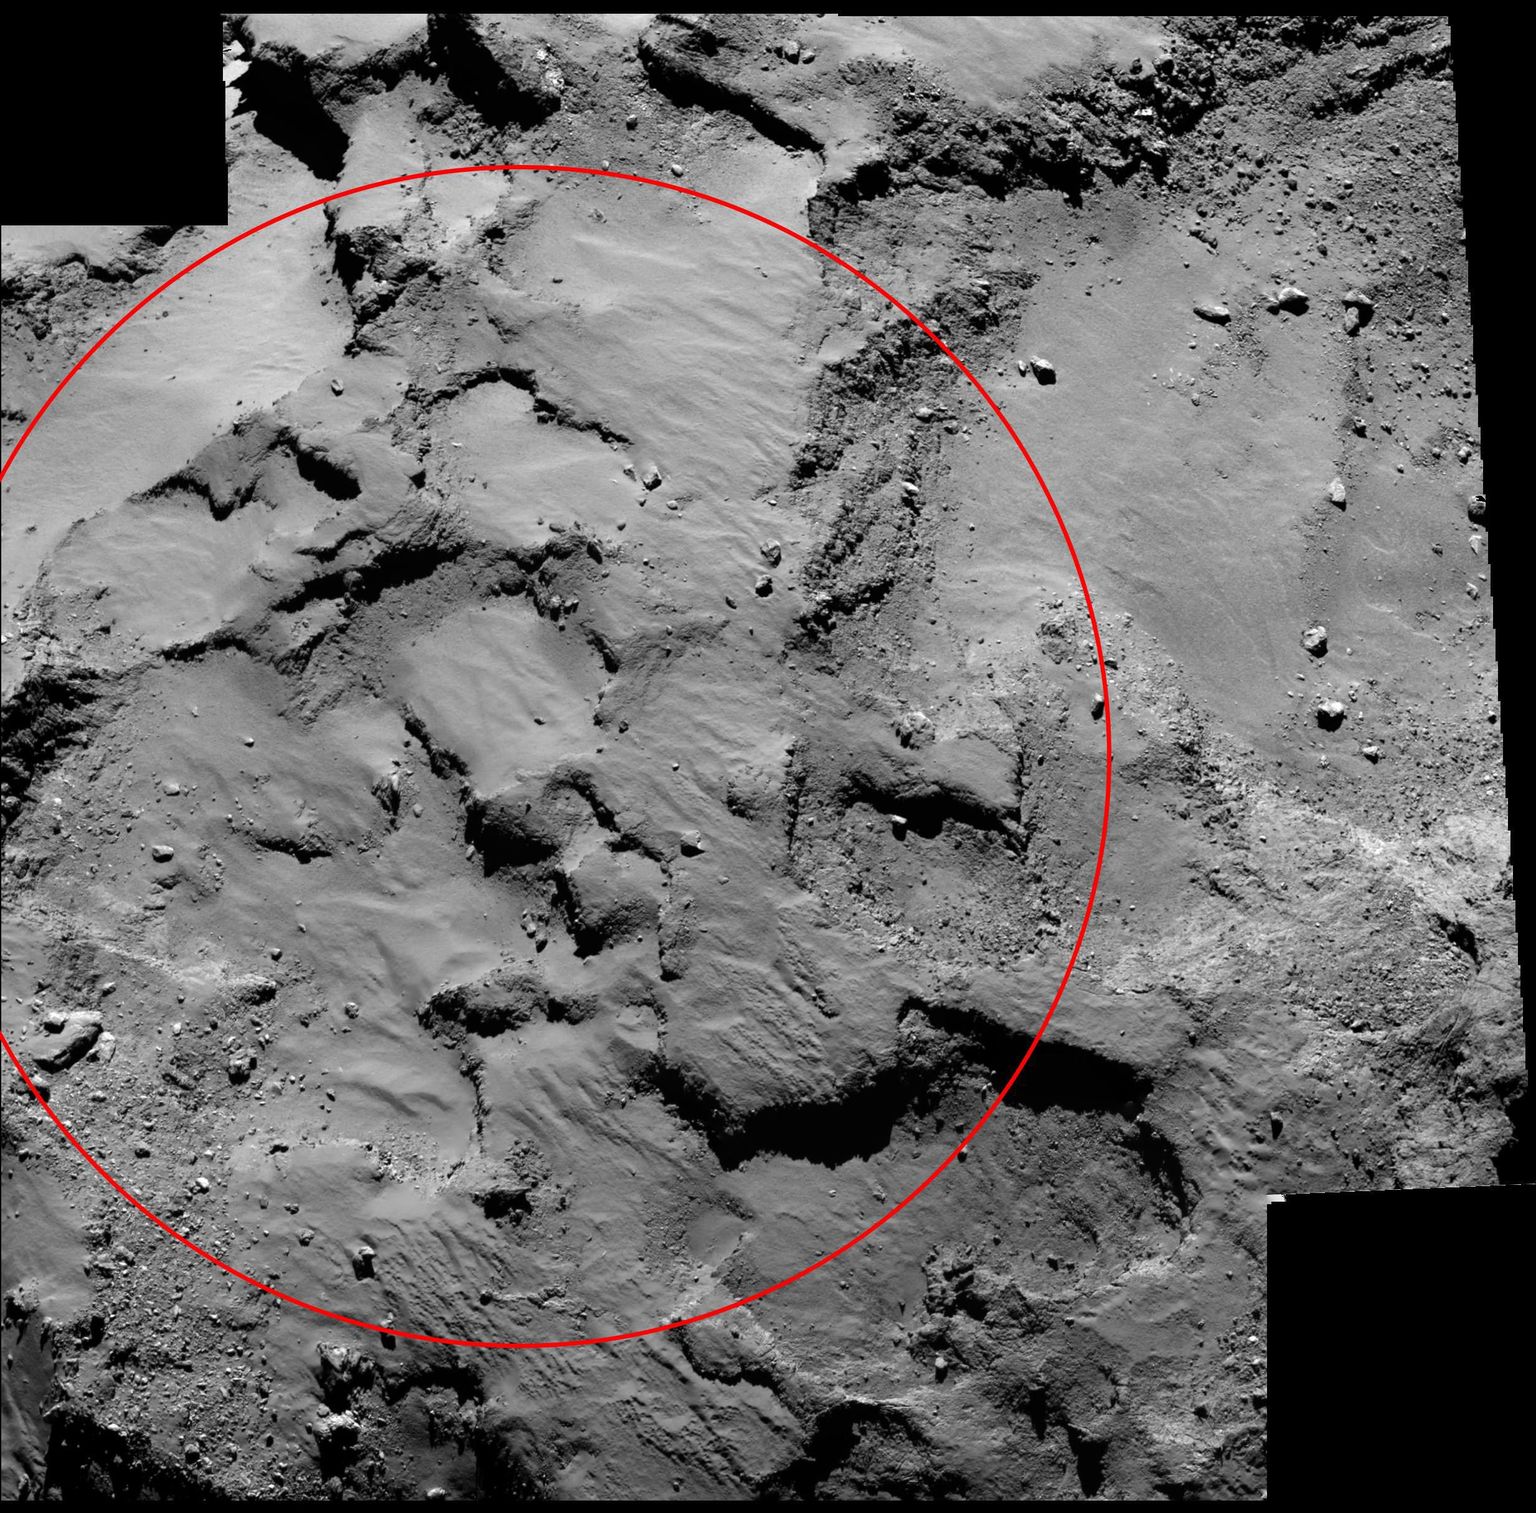 Paik komeedil 67P, kuhu Rosetta sondi uurimisrobot Philae peaks maanduma